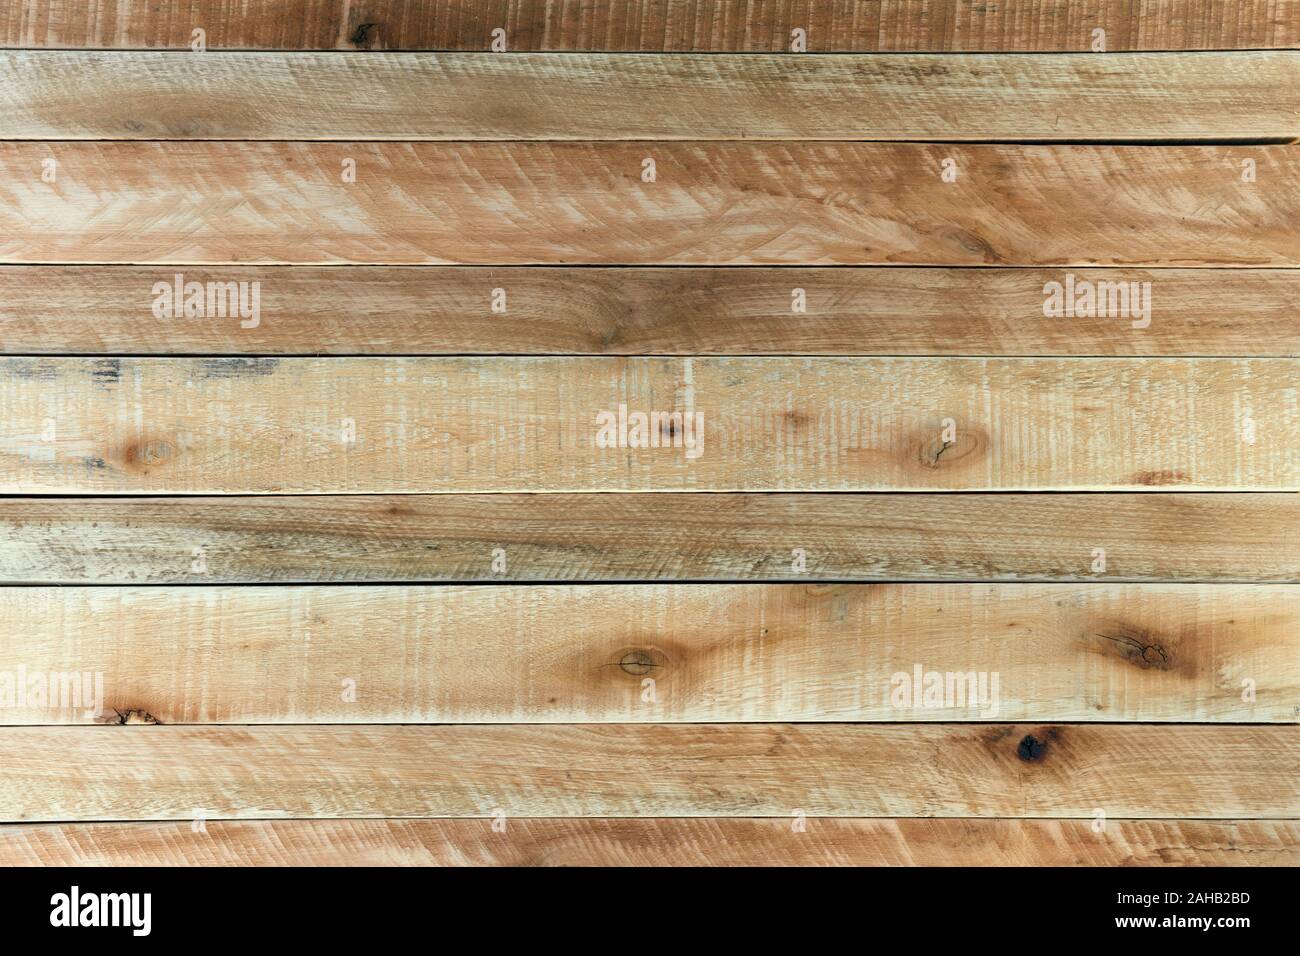 Rustikale hellbraun Holz- Hintergrund. Holz strukturierte Oberfläche mit Pinien und Eukalyptus Bretter und Latten. Stockfoto